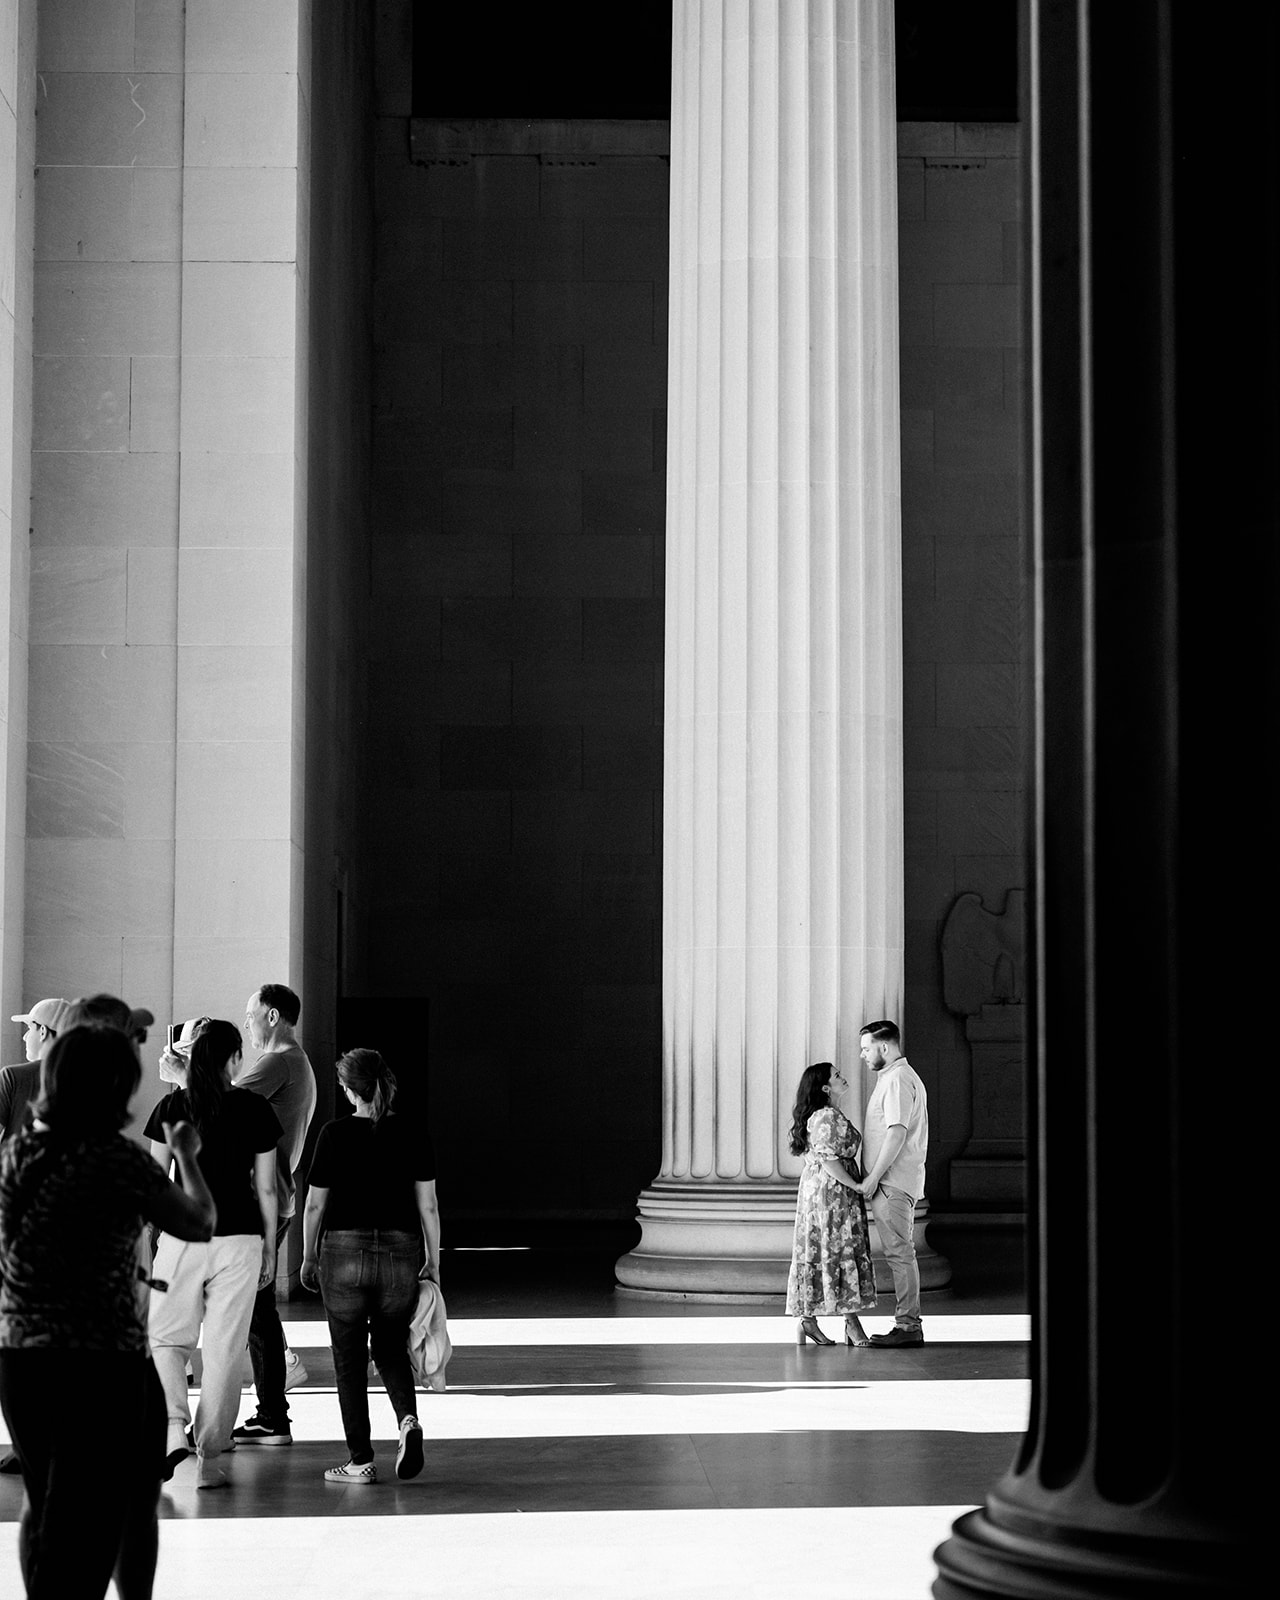 
Washington DC photographer
